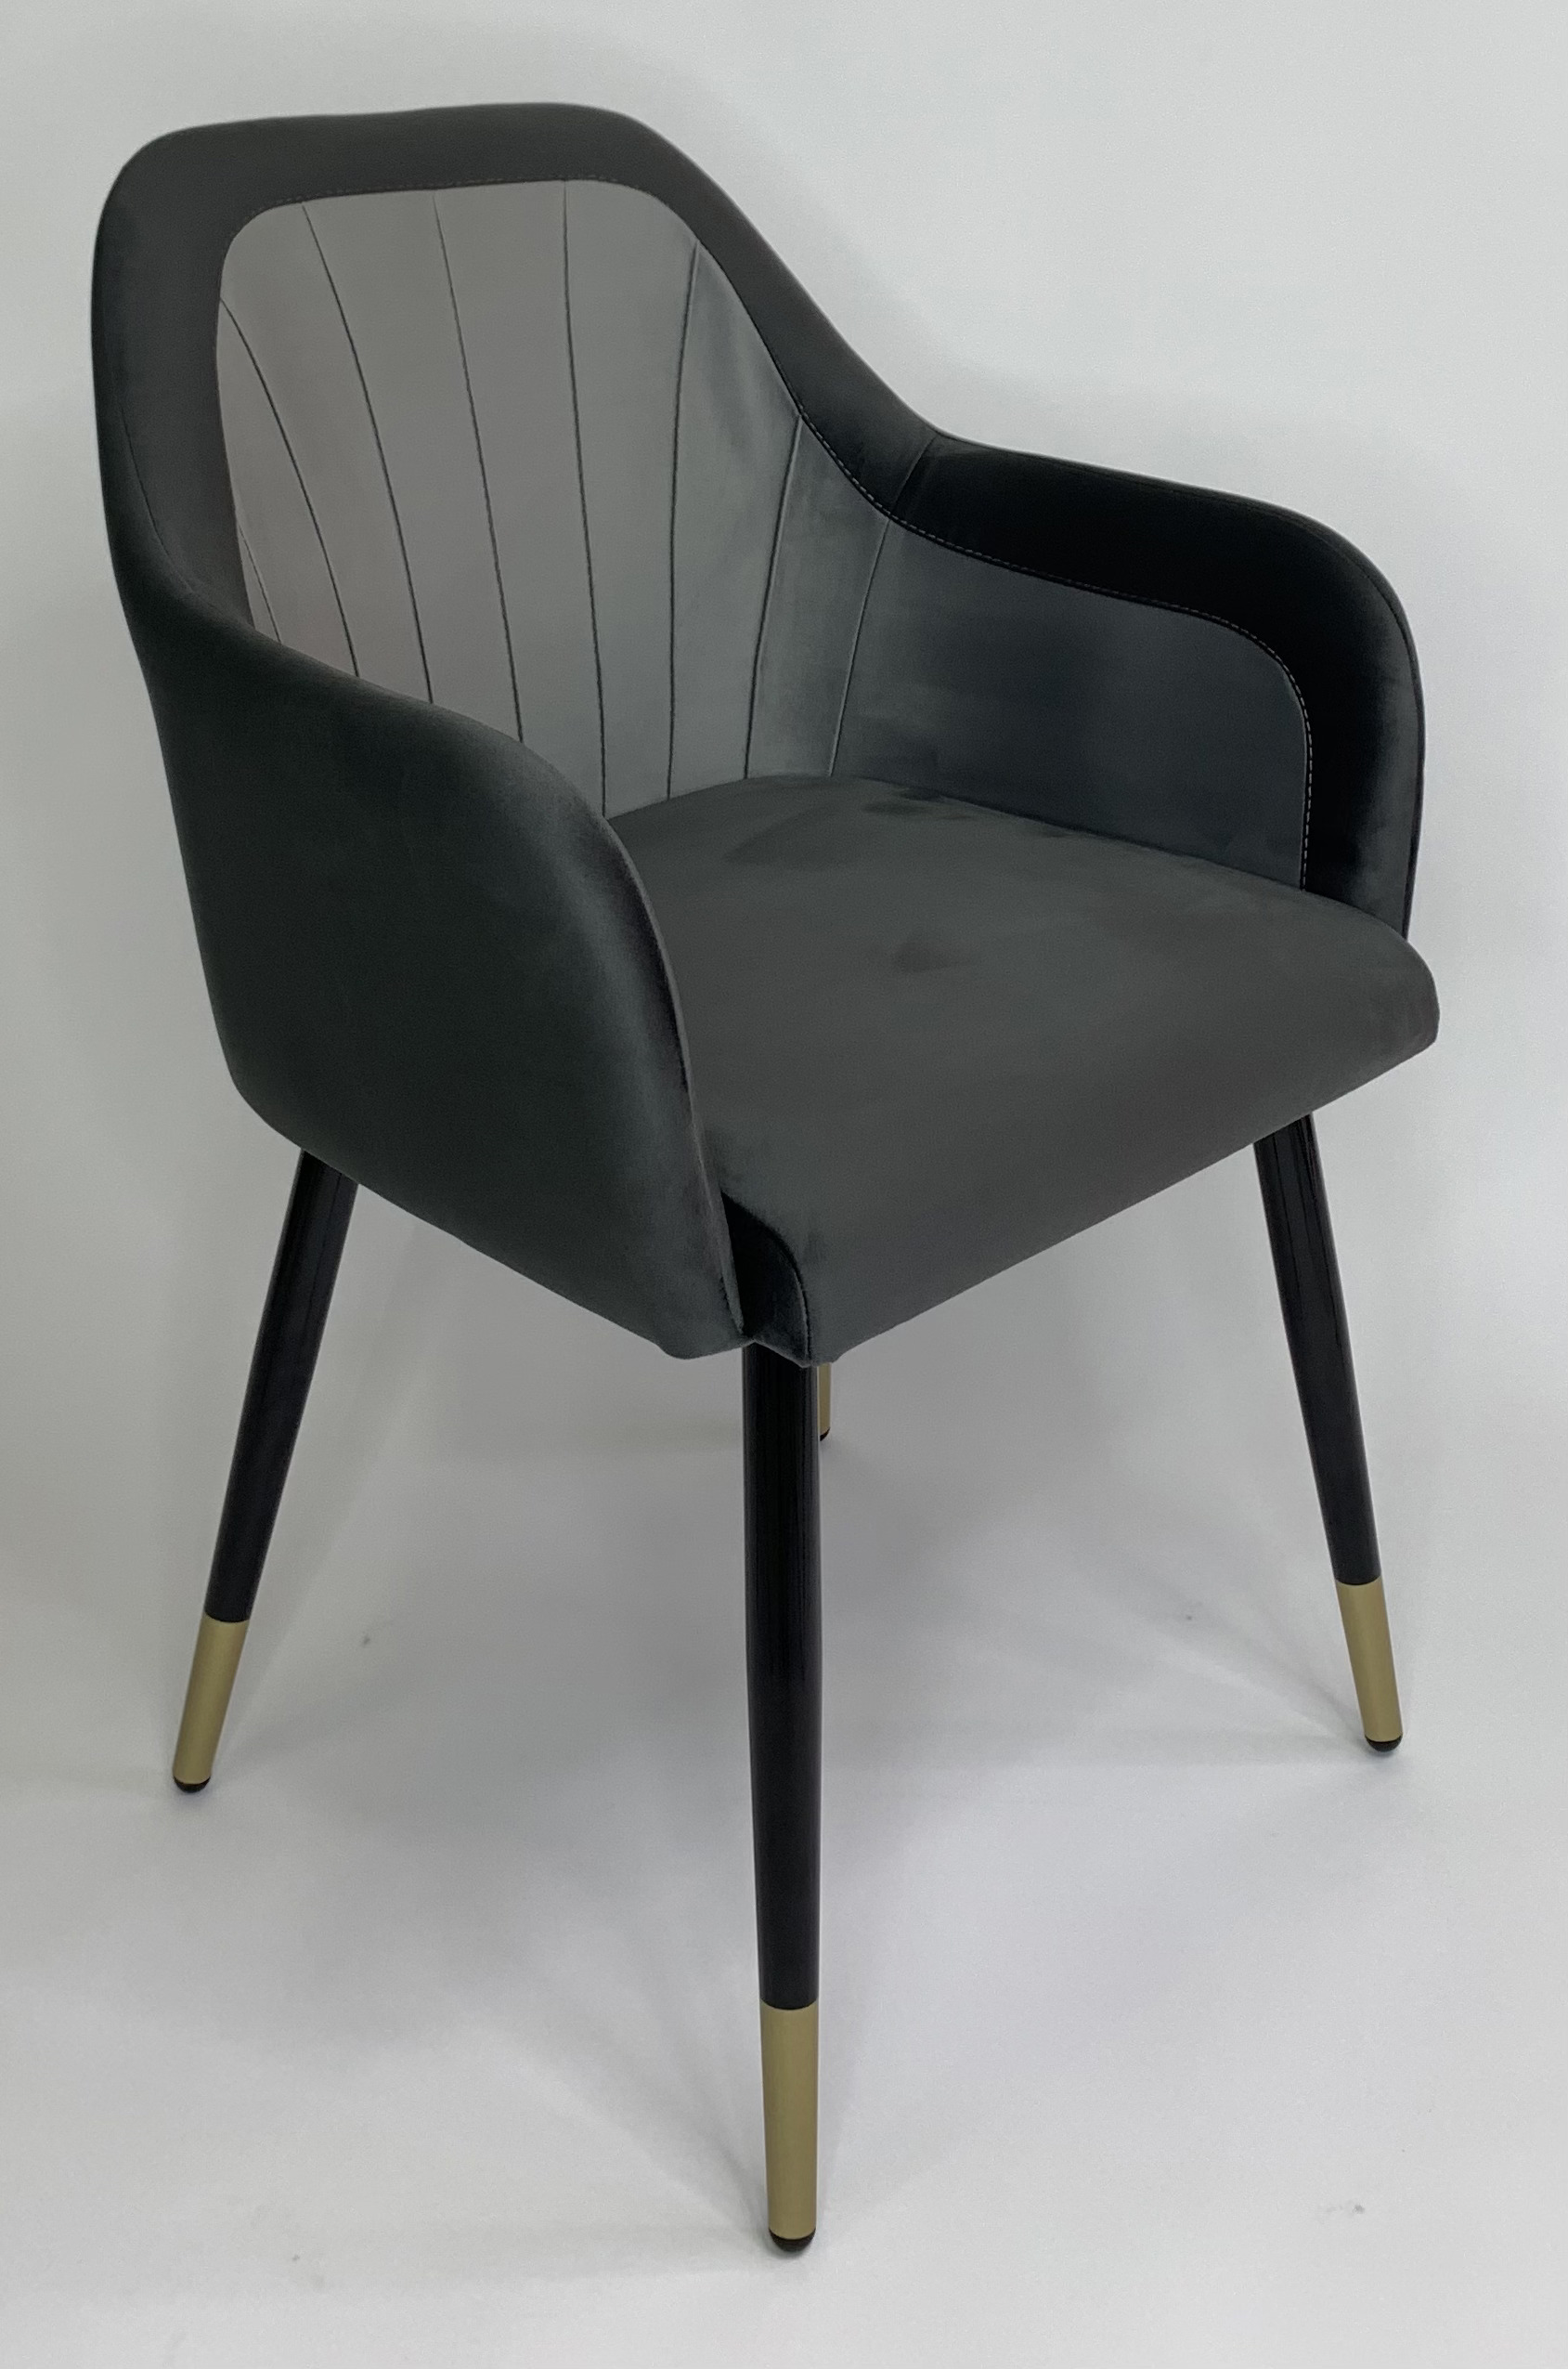 90203157 Стул-кресло мебель для столовой/гостинной/спальни цвет графит Агат STLM-0131105 MILAVIO